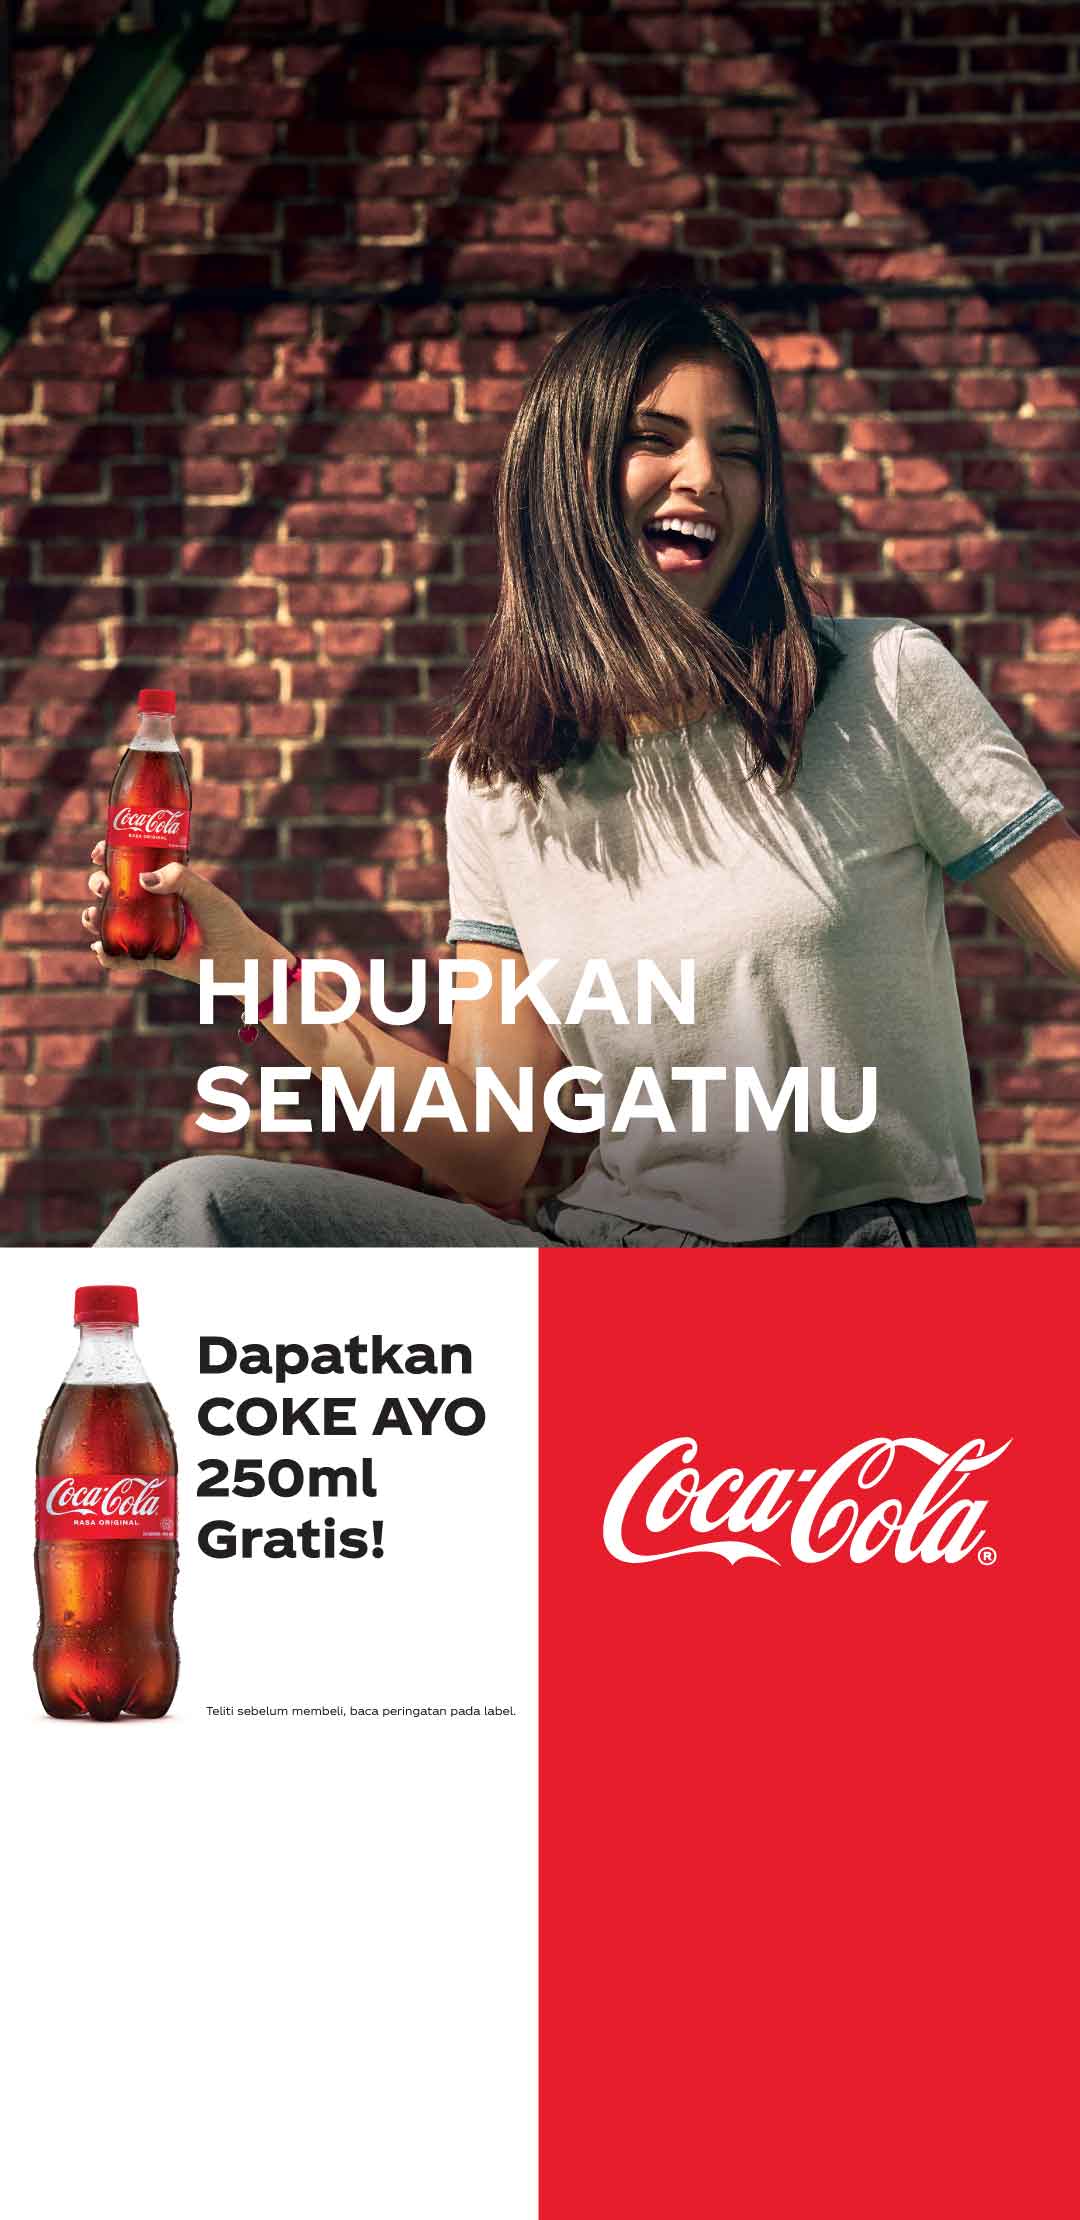 3 euro di sconto Coca Cola - DimmiCosaCerchi